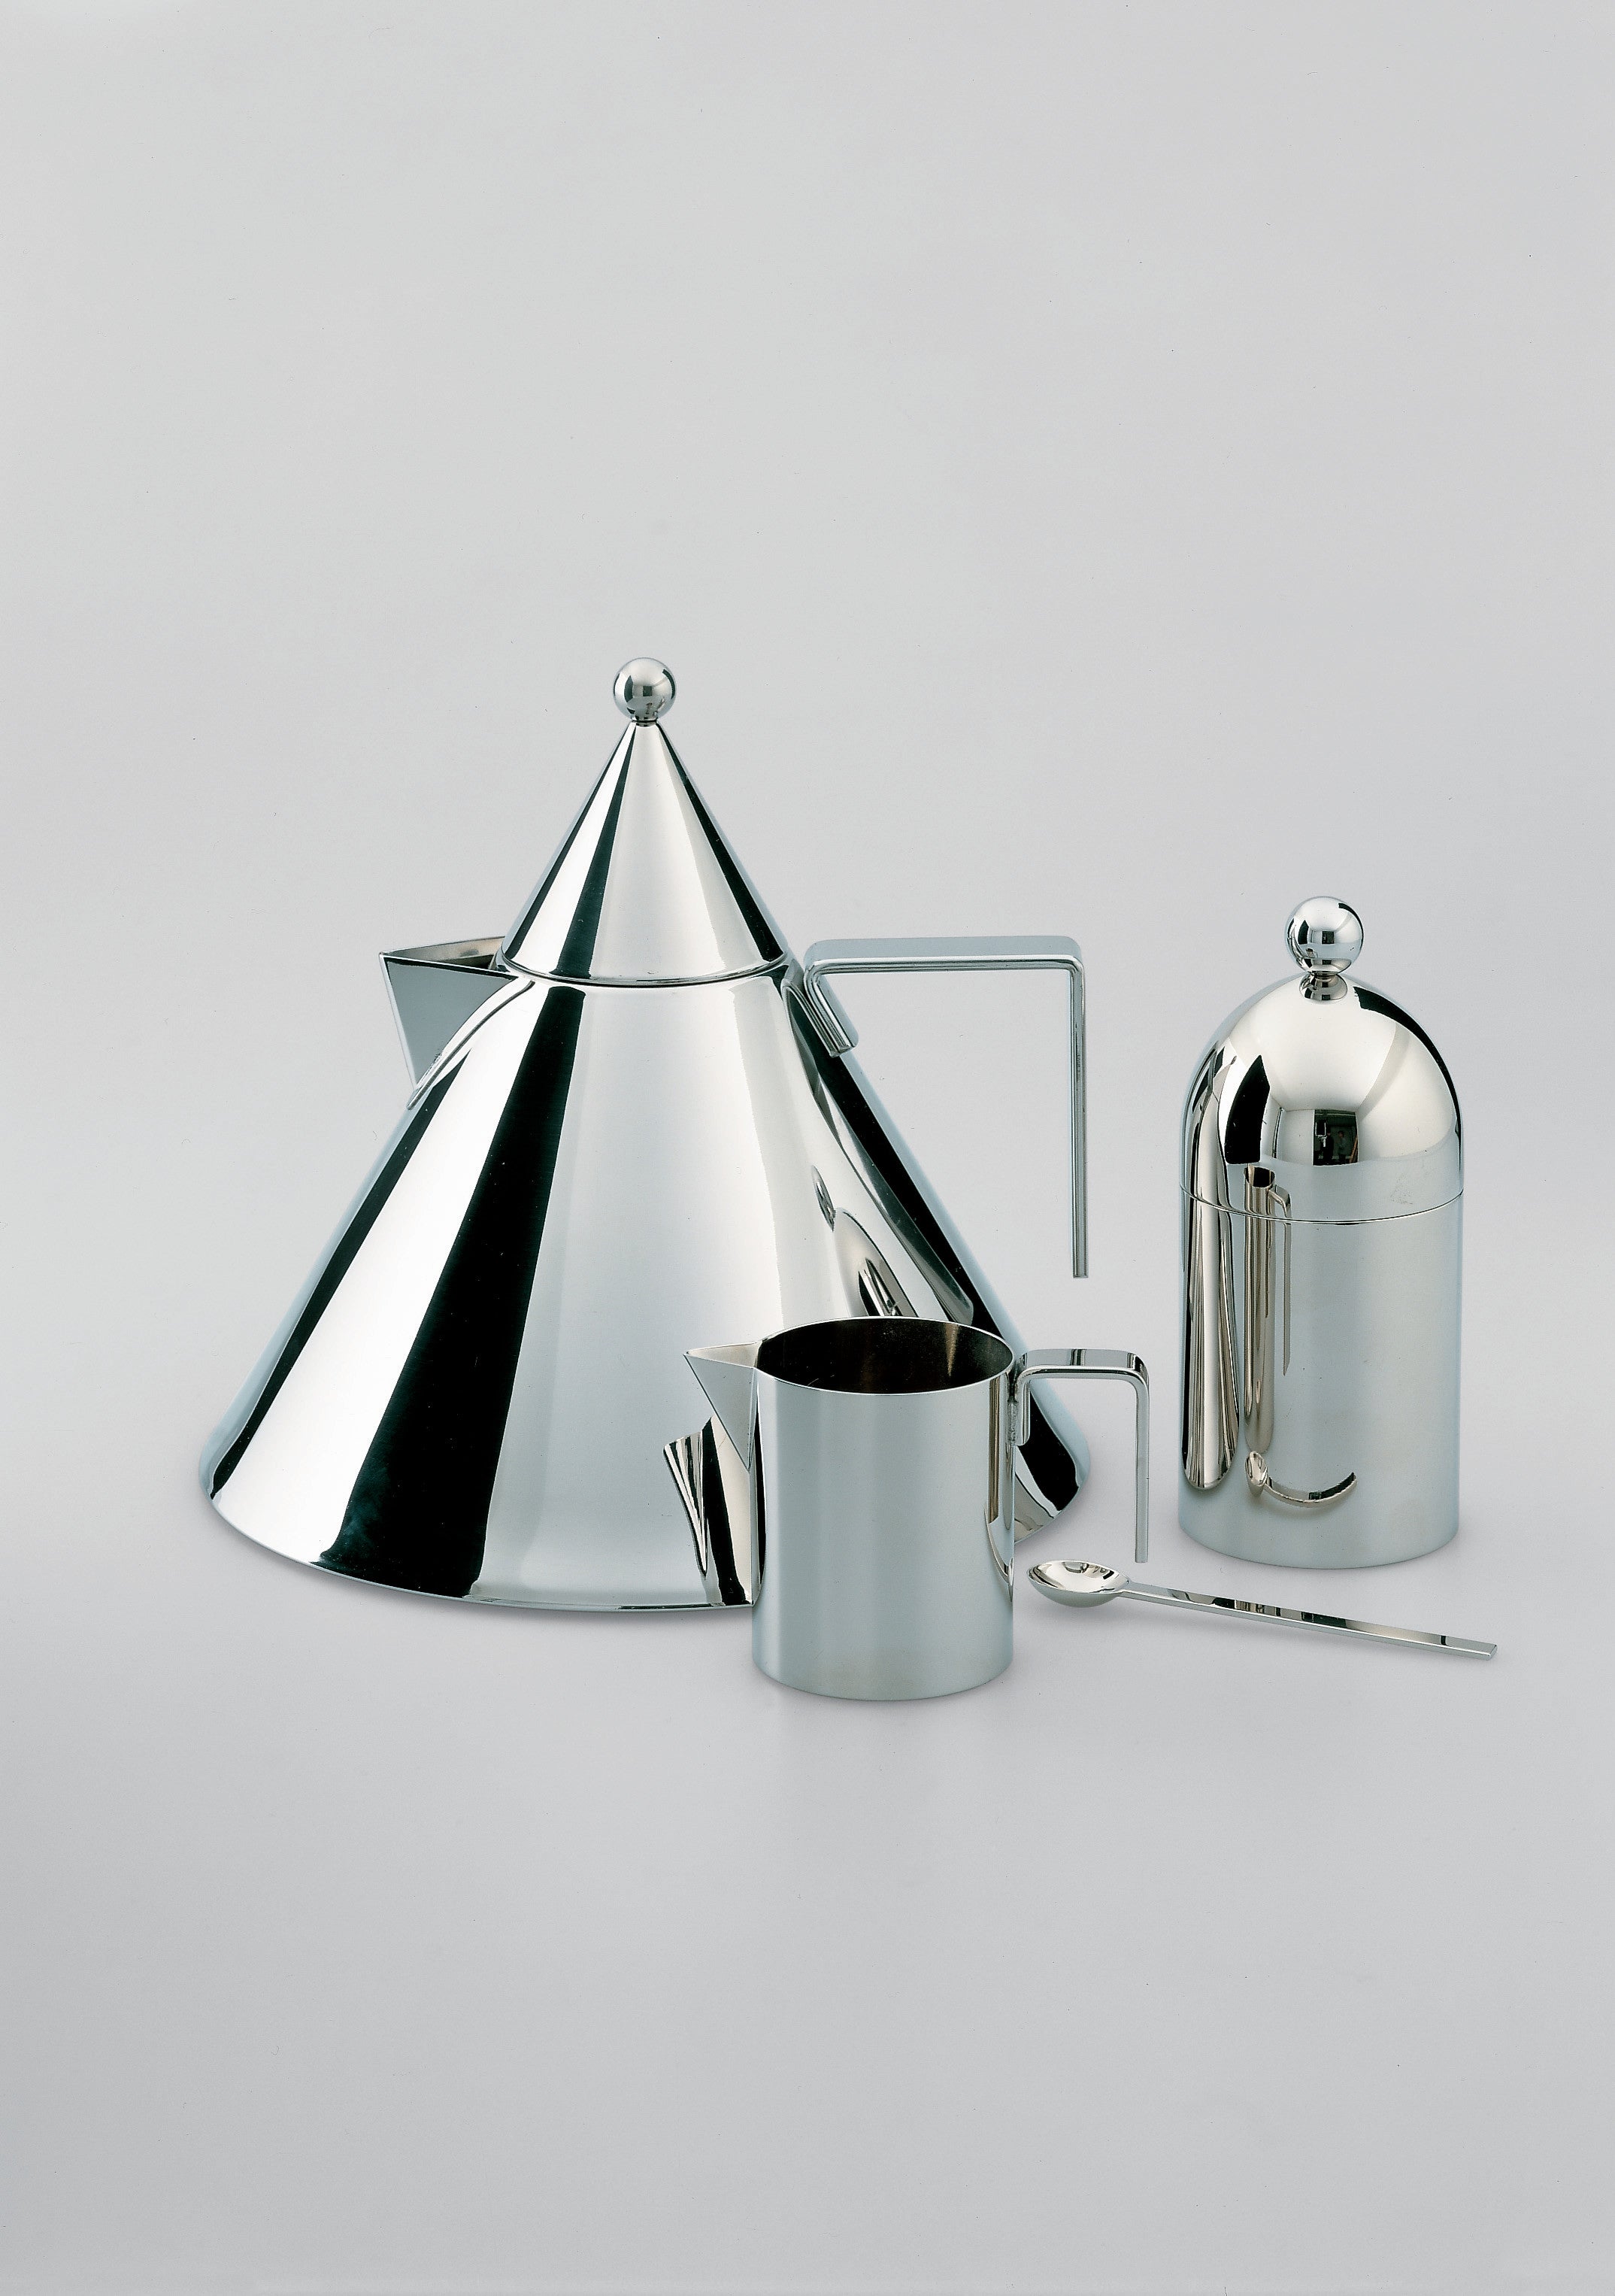 La Conica Aldo Rossi's kettle